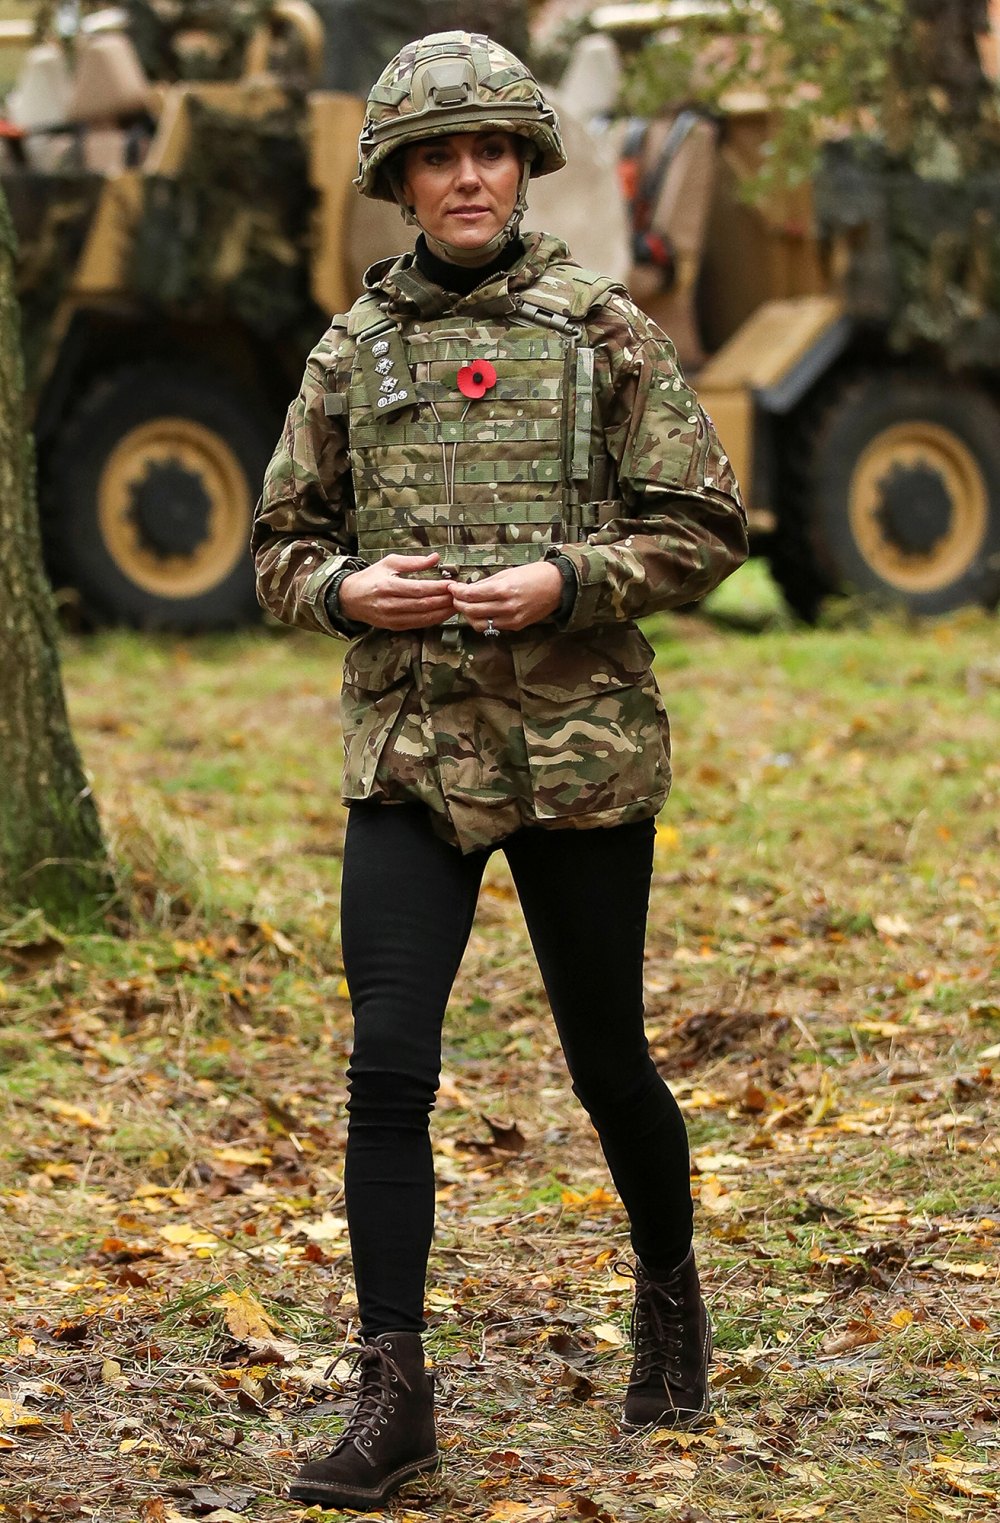 Prinzessin Kate Middleton tauscht ihre Kleider während eines Militärbesuchs gegen Tarnfarben ein